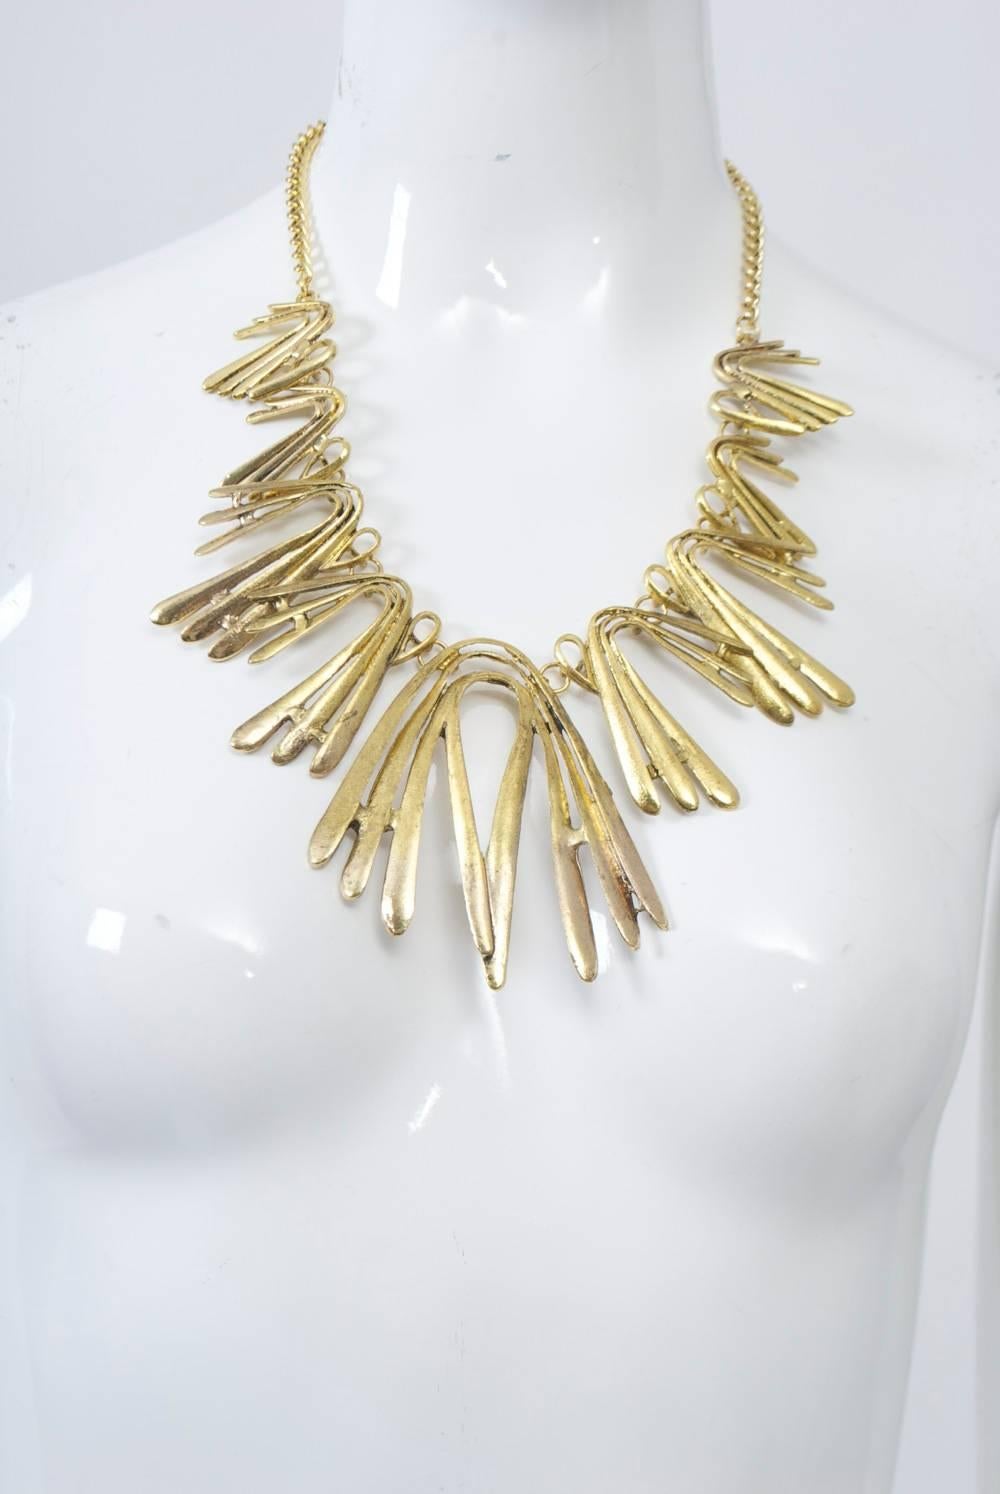 Goldfarbene Halskette aus bumerangförmigen Teilen in abgestuften Größen, die Oscar de la Renta zugeschrieben wird, aber nicht gestempelt ist. Die Kette im Rücken ist verstellbar. Tolle Statement-Halskette. Das zentrale Element ist 3,5